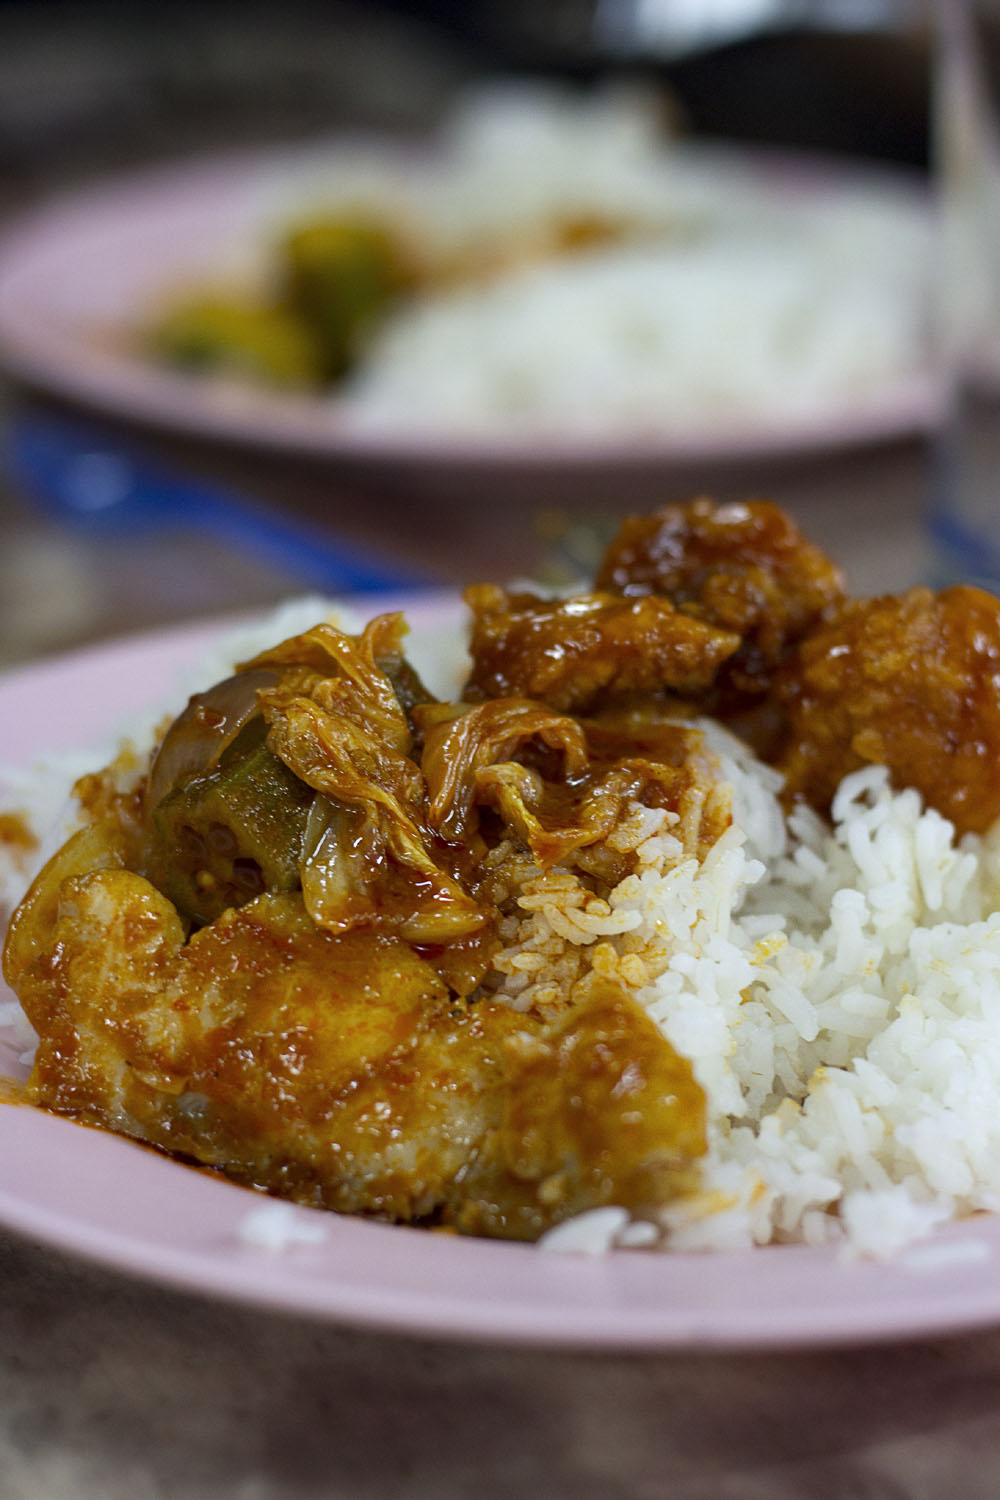 Malacca Food Crawl